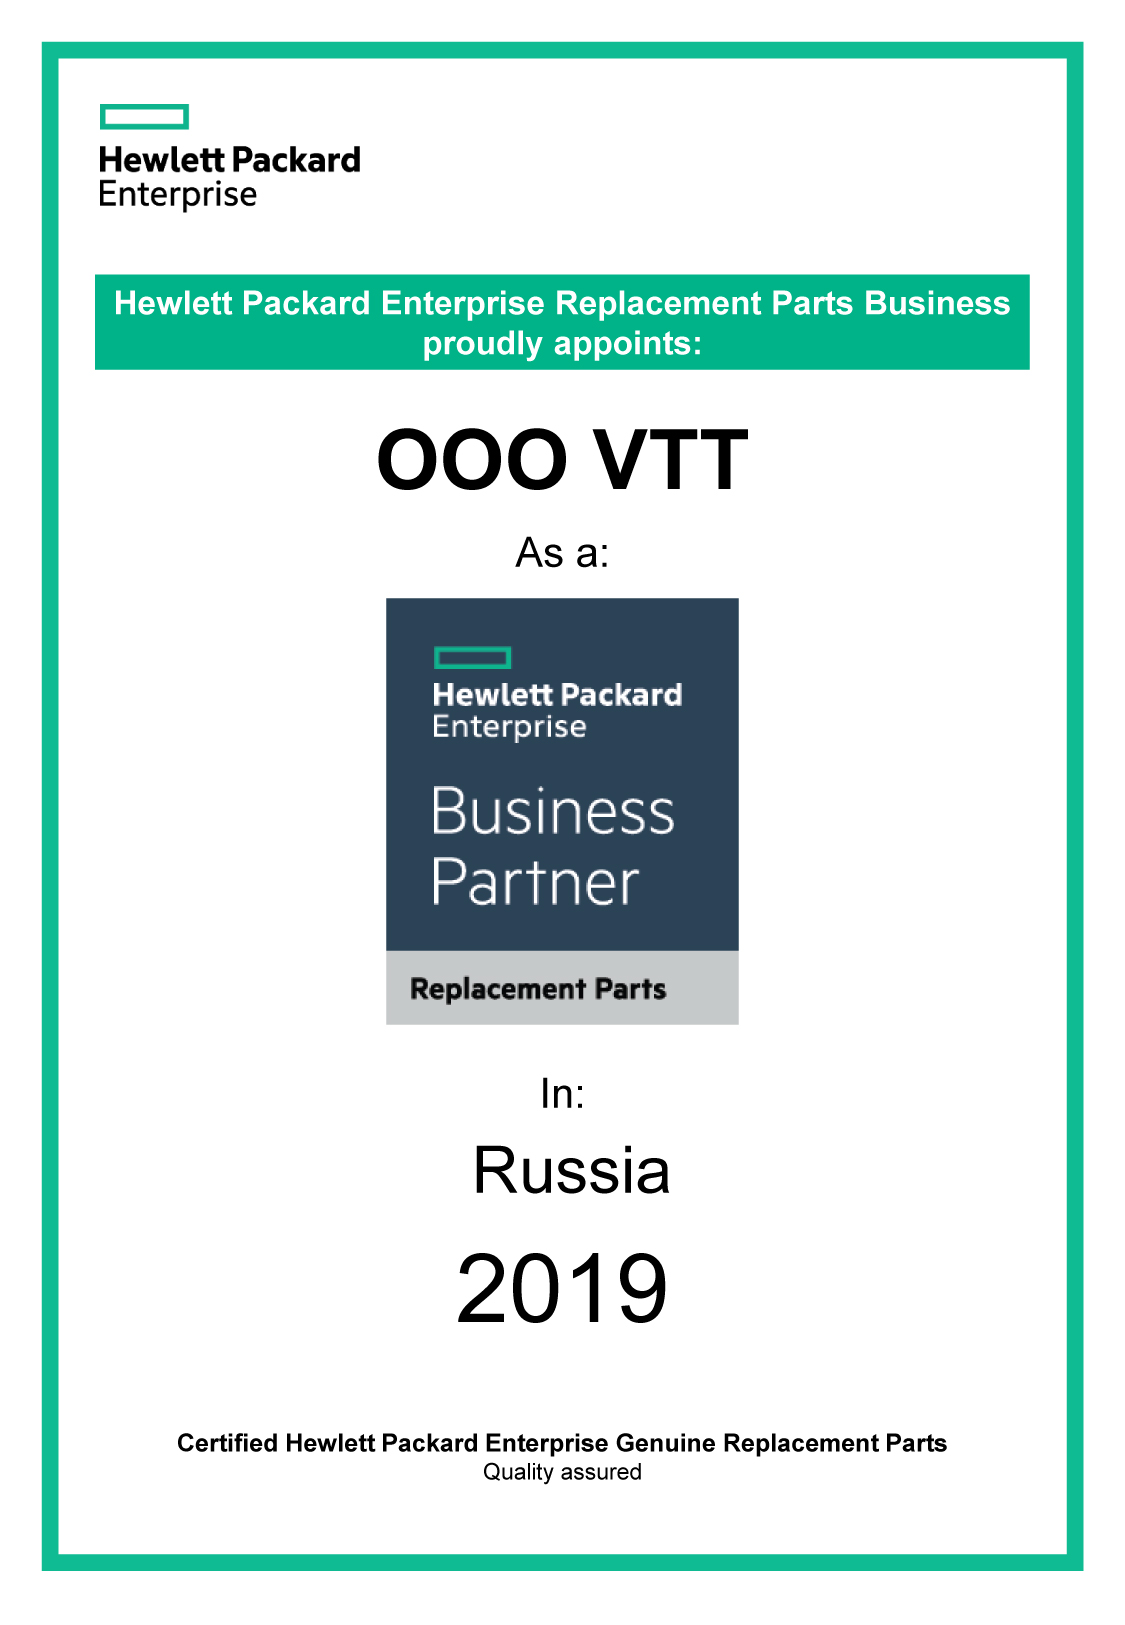 BusinessPartner-HP-сертификат-компьютерные-и-серверные-запчасти-2019.jpg